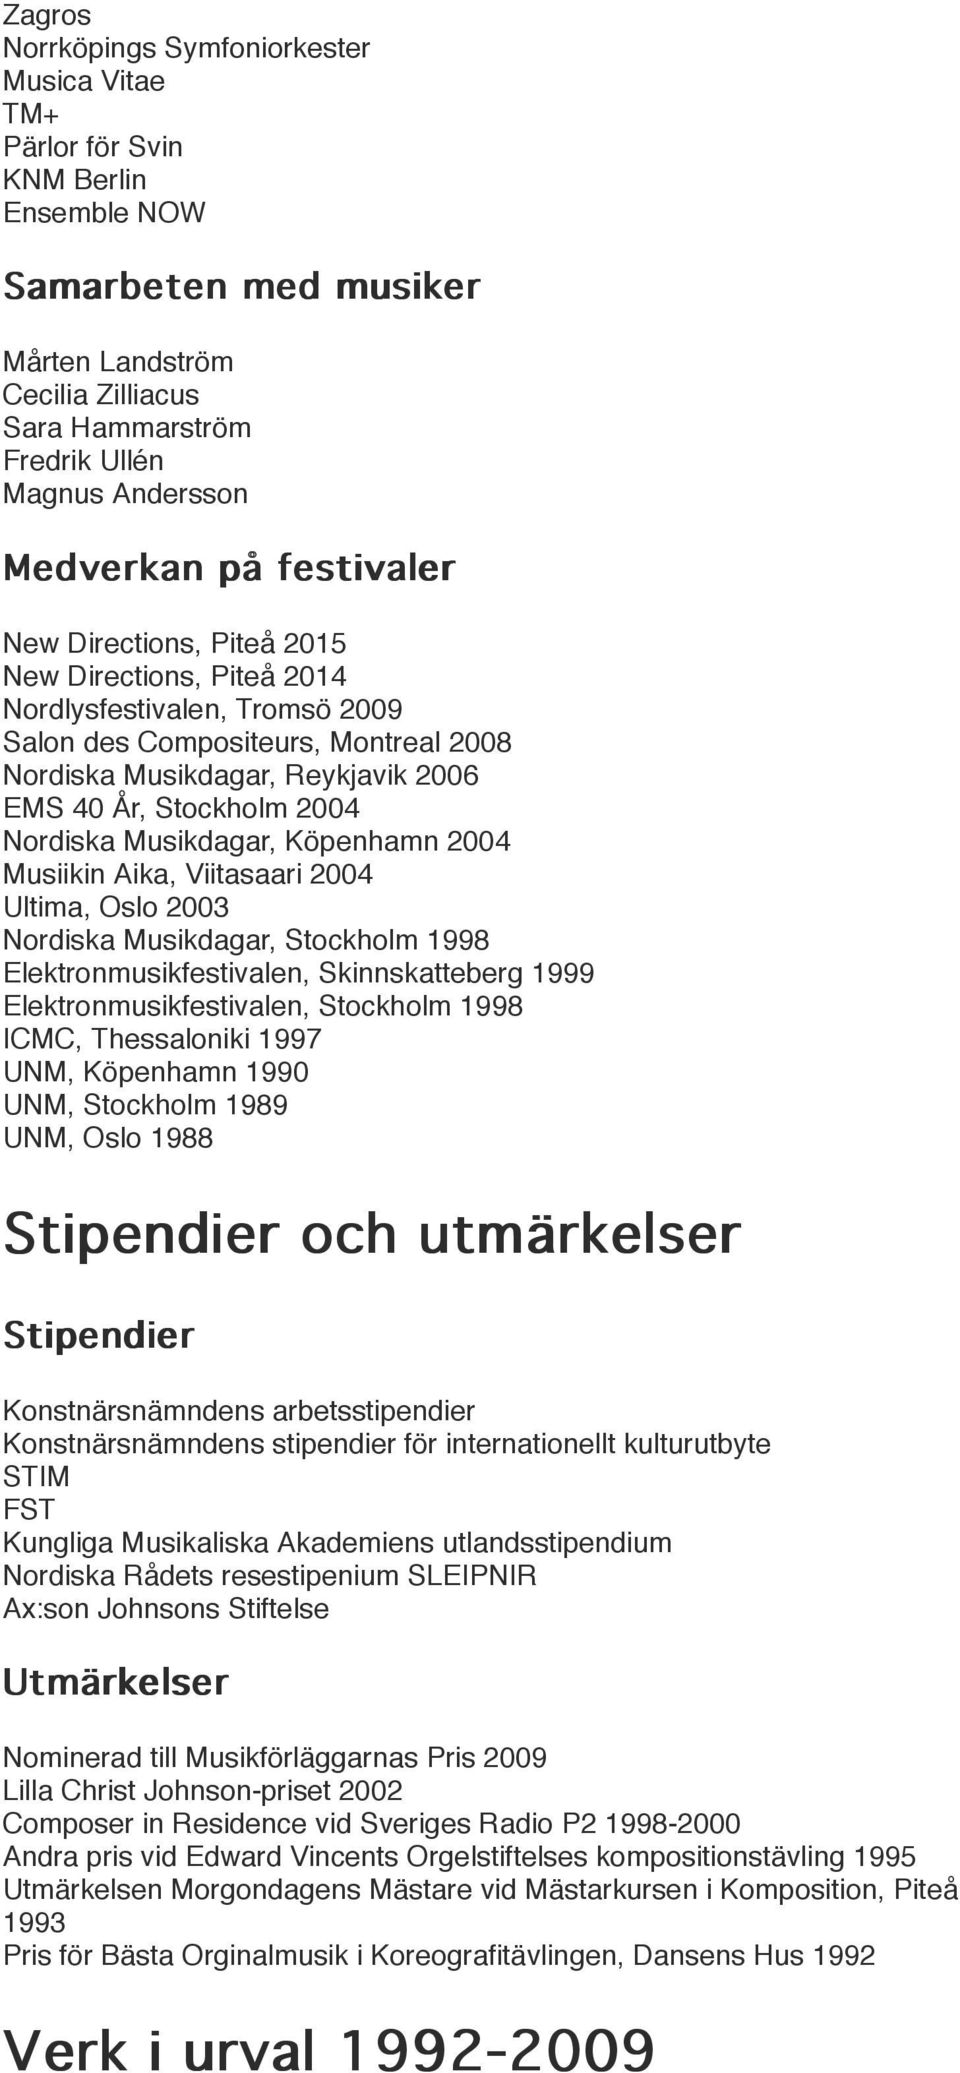 Stockholm 2004 Nordiska Musikdagar, Köpenhamn 2004 Musiikin Aika, Viitasaari 2004 Ultima, Oslo 2003 Nordiska Musikdagar, Stockholm 1998 Elektronmusikfestivalen, Skinnskatteberg 1999